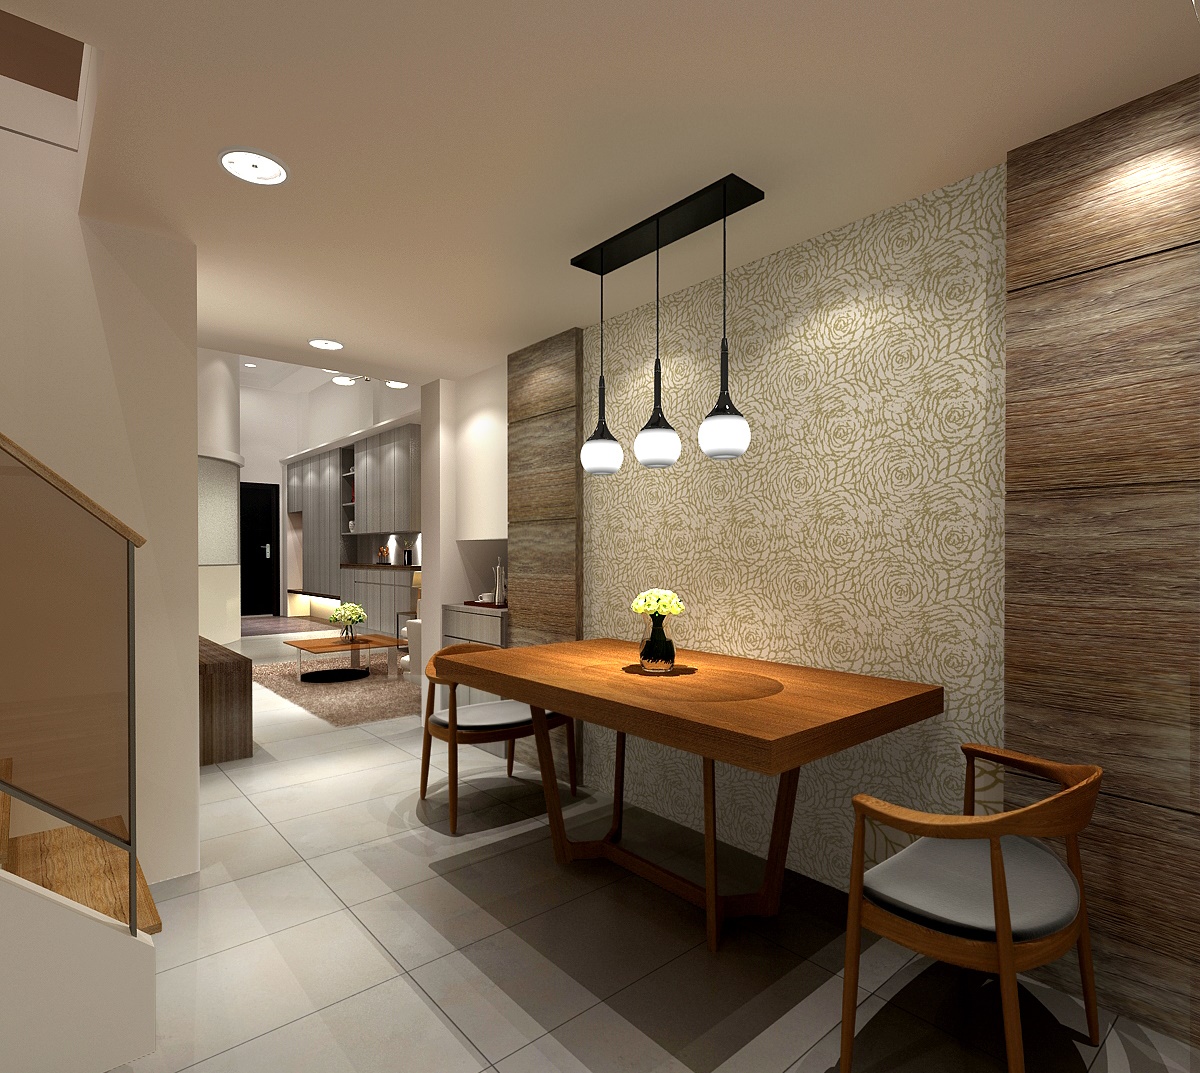 米色餐廳 吊燈 餐桌 餐椅 宅在家也能提升品味 壁紙輕裝修貼出質感空間 信義居家